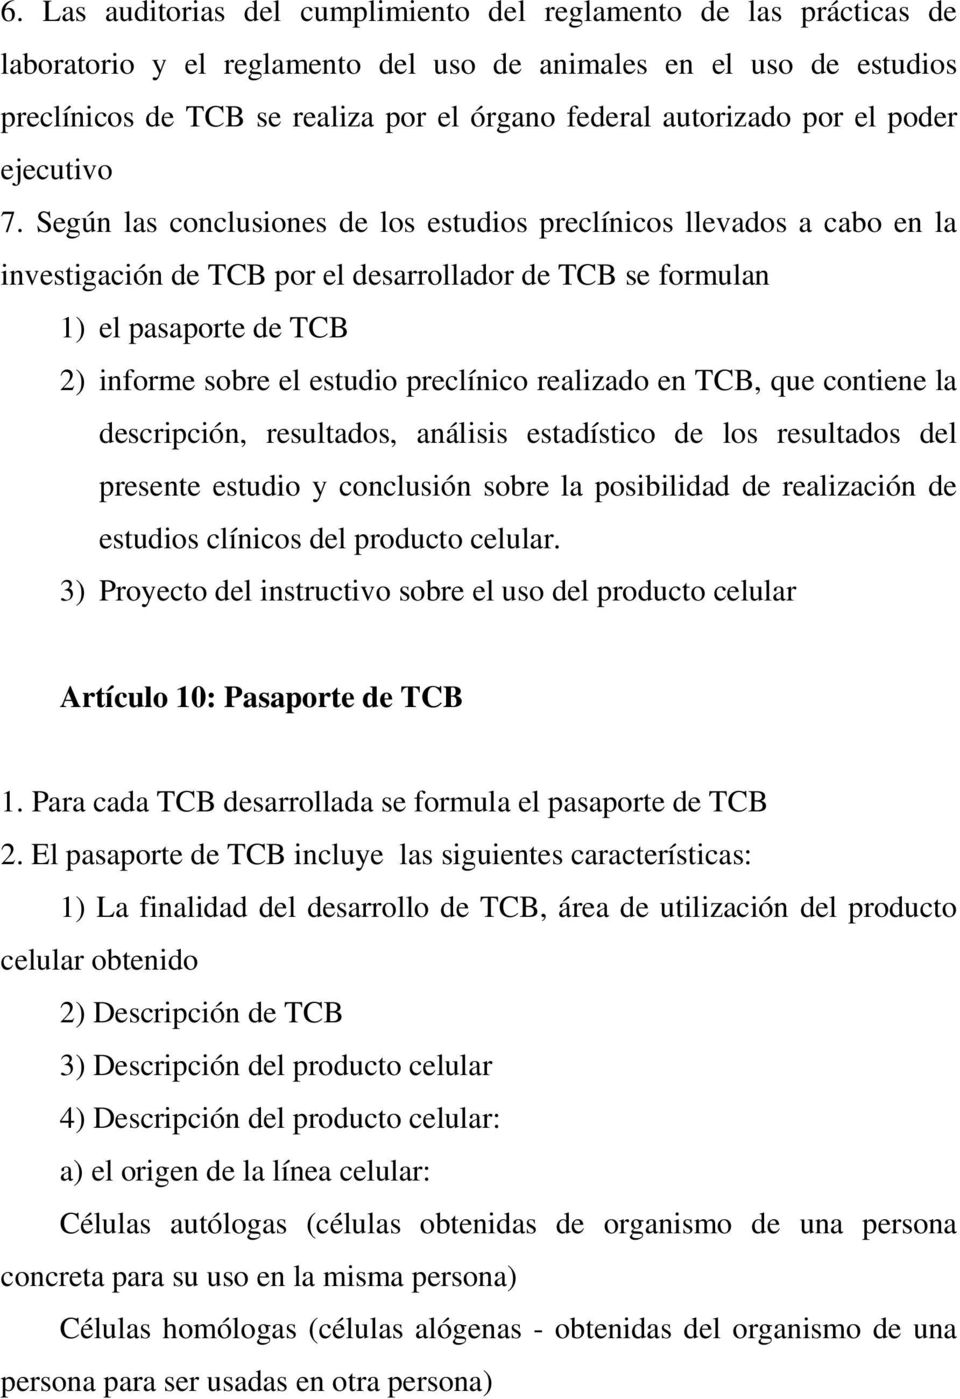 Según las conclusiones de los estudios preclínicos llevados a cabo en la investigación de TCB por el desarrollador de TCB se formulan 1) el pasaporte de TCB 2) informe sobre el estudio preclínico